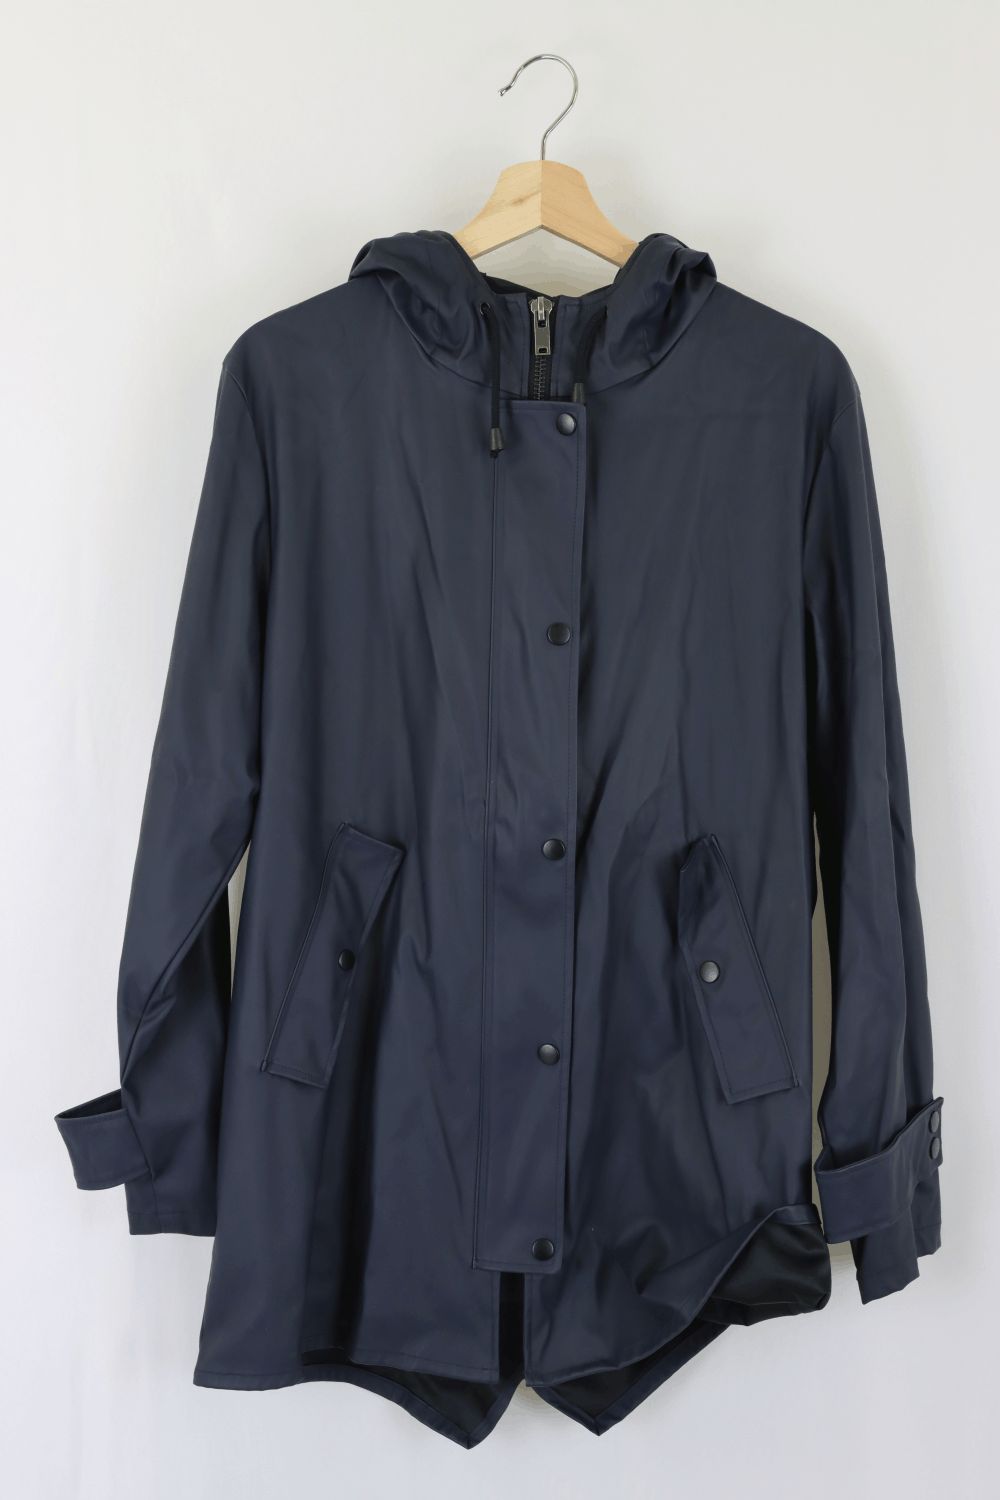 Zara Navy Rain Coat S